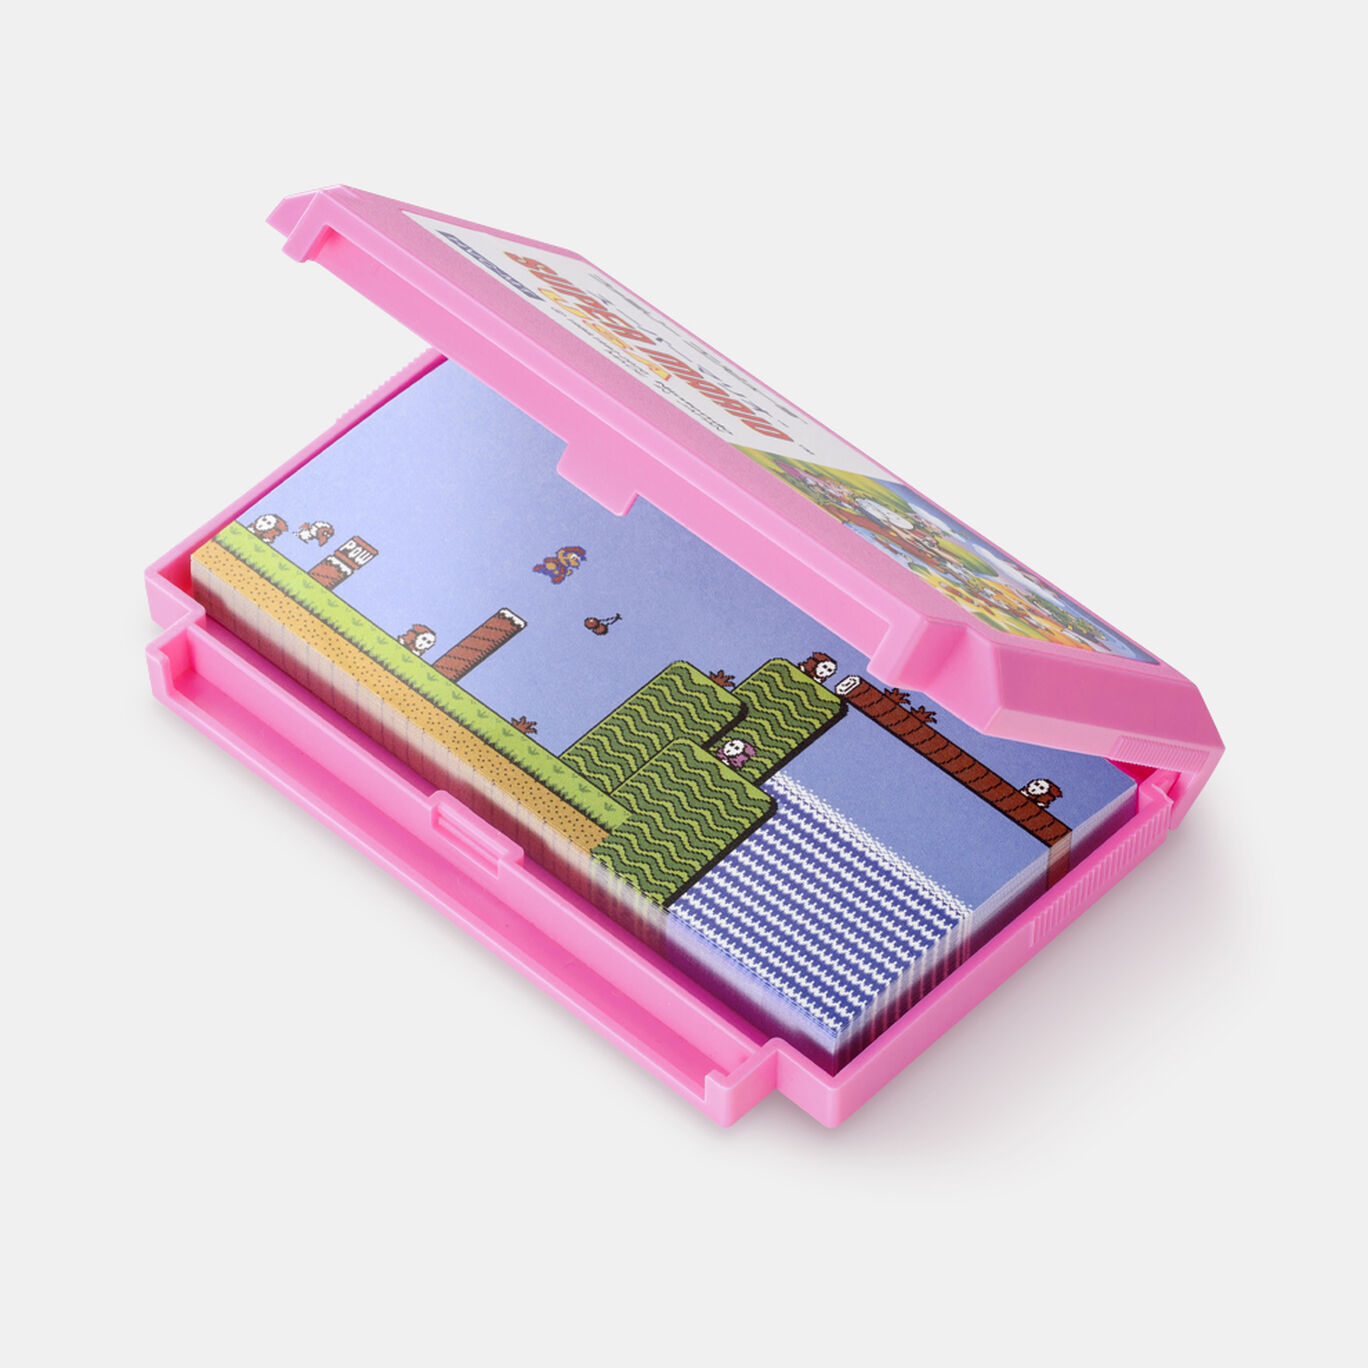 カセット型ケース付きメモ スーパーマリオUSA【Nintendo TOKYO/OSAKA取り扱い商品】